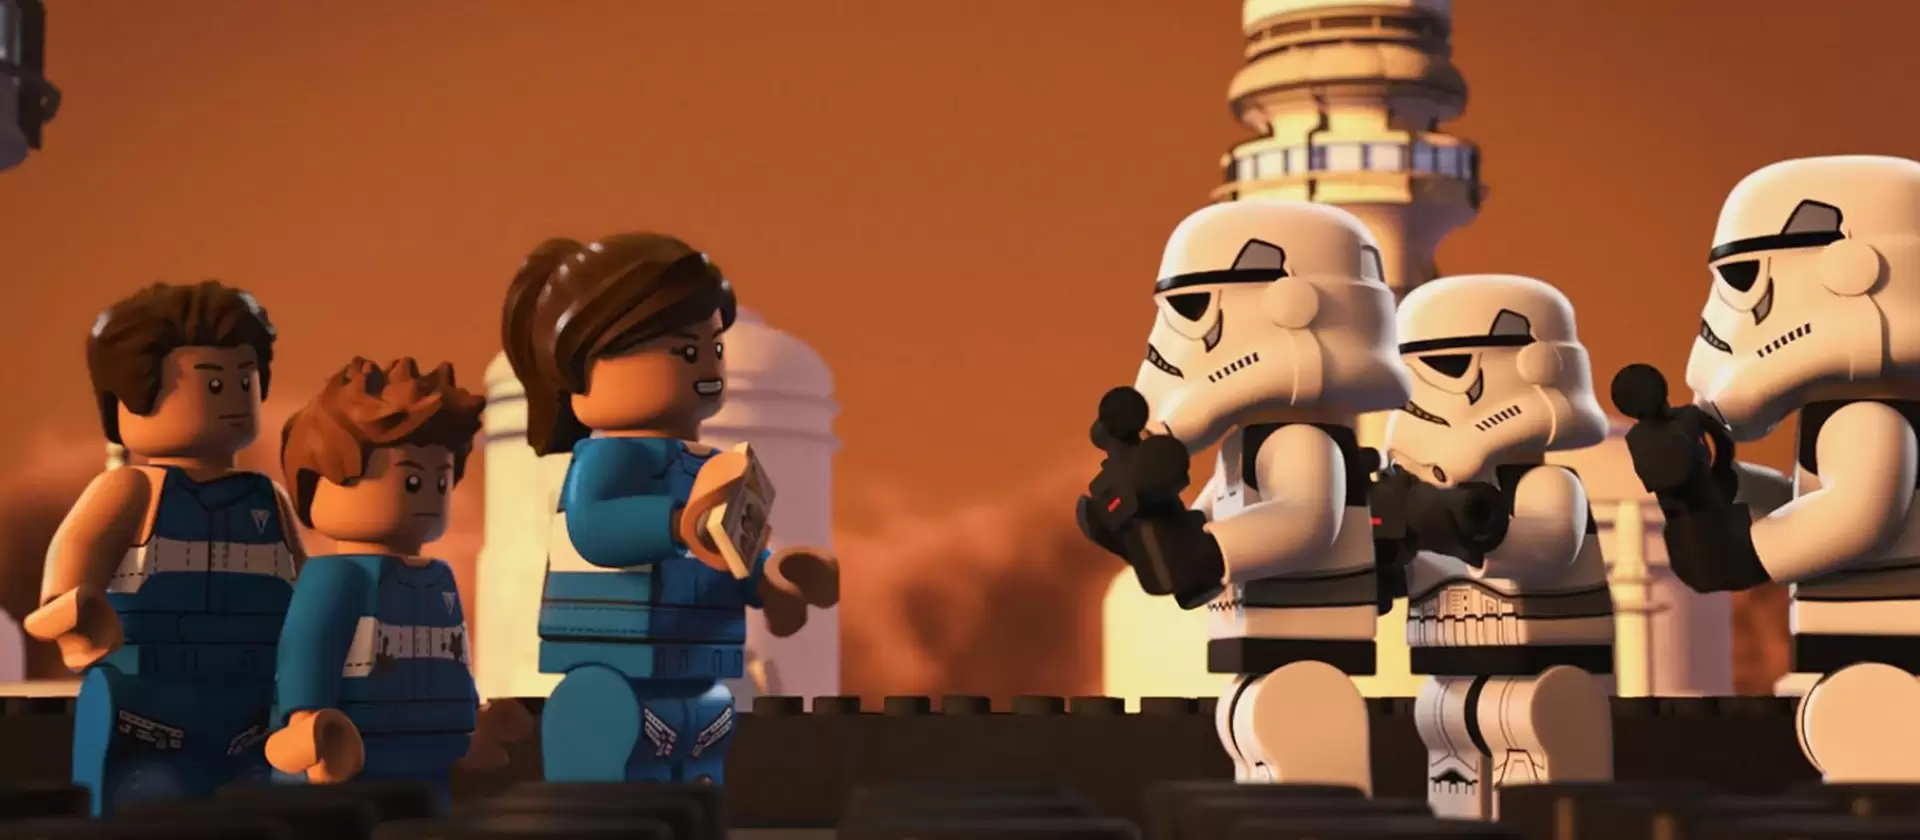 دانلود انیمیشن LEGO Star Wars: The Freemaker Adventures 2016 با زیرنویس فارسی